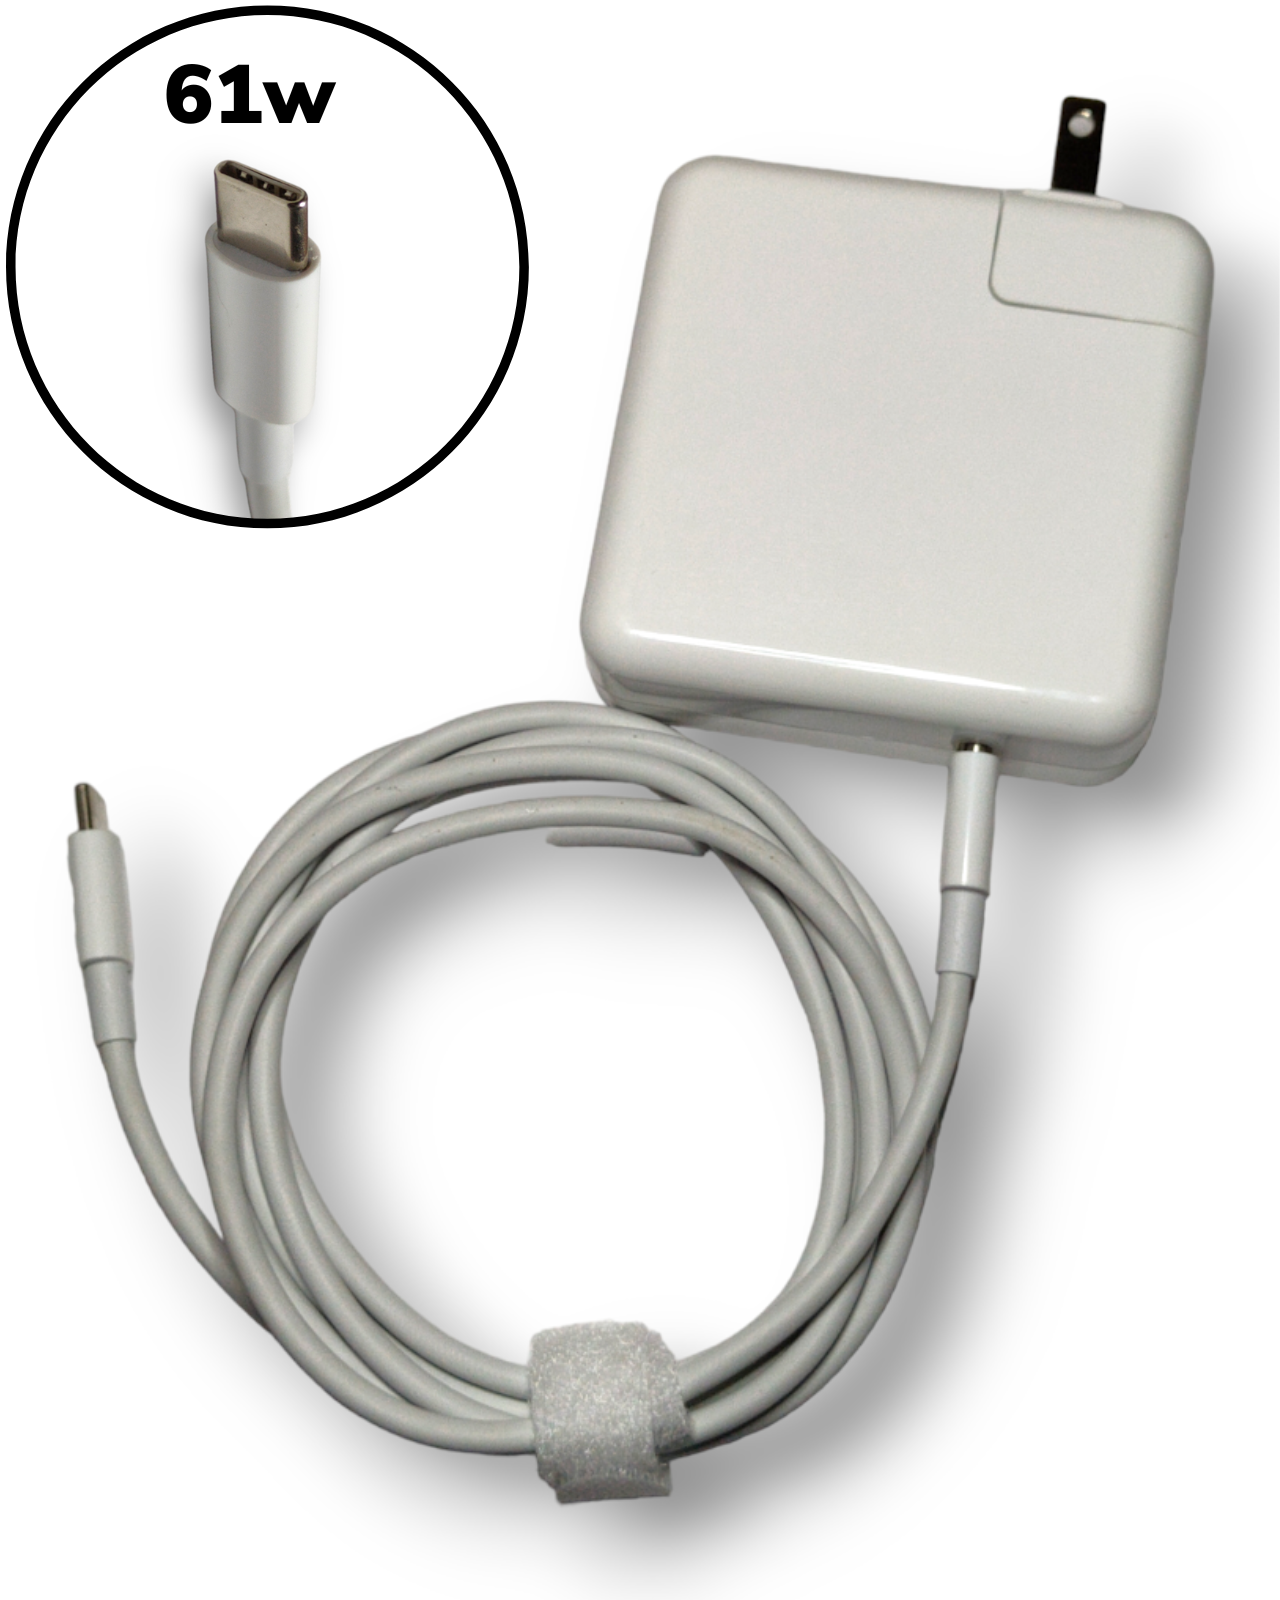 Cargador Compatible con Macbook Air iPhone iPad 61w Usb Tipo C